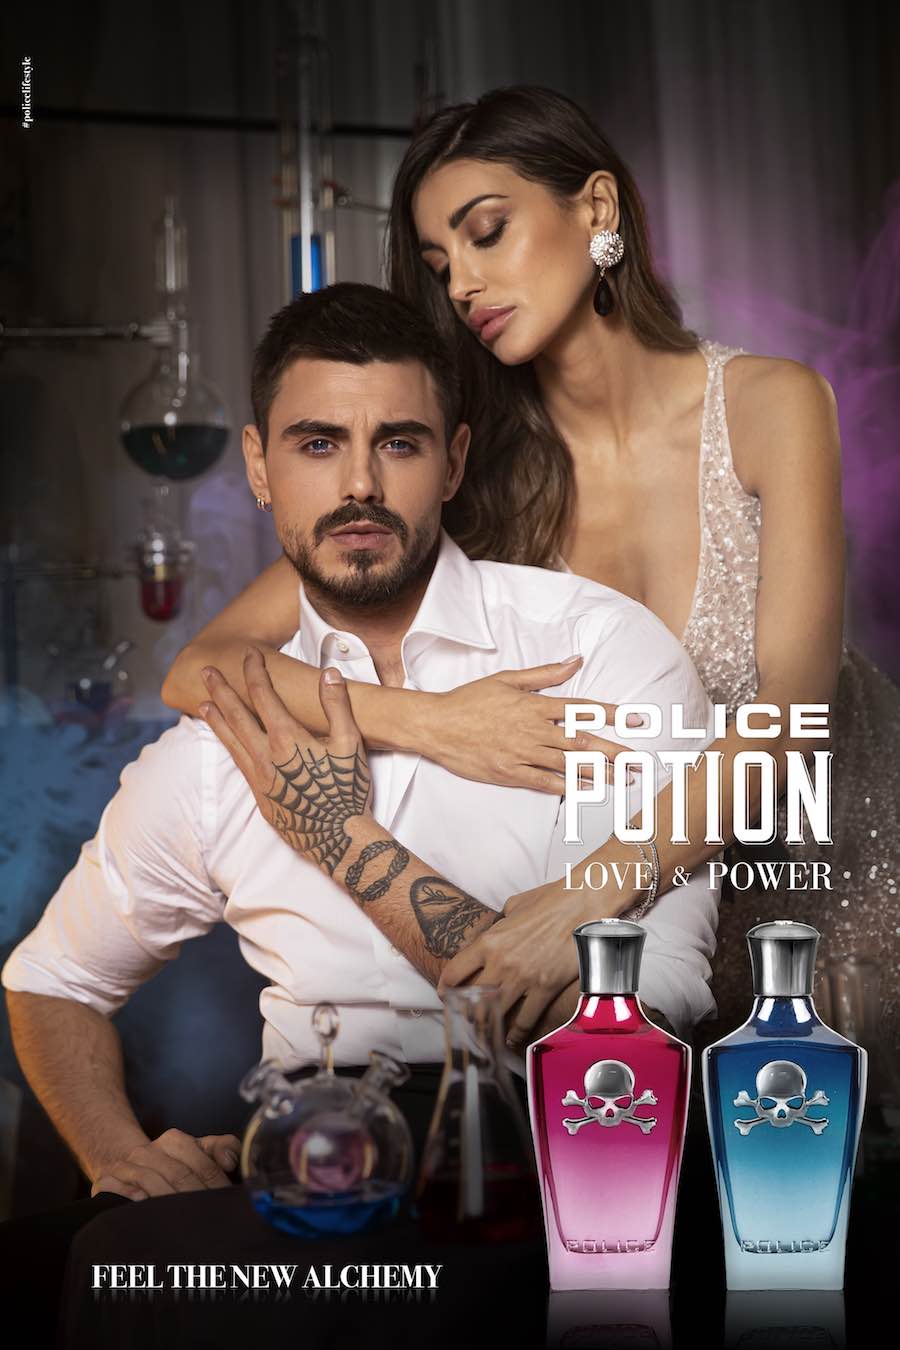 Mavive sceglie gli influencer Francesco Monte e Cristina Buccino per le fragranze Police Potion Love & Power